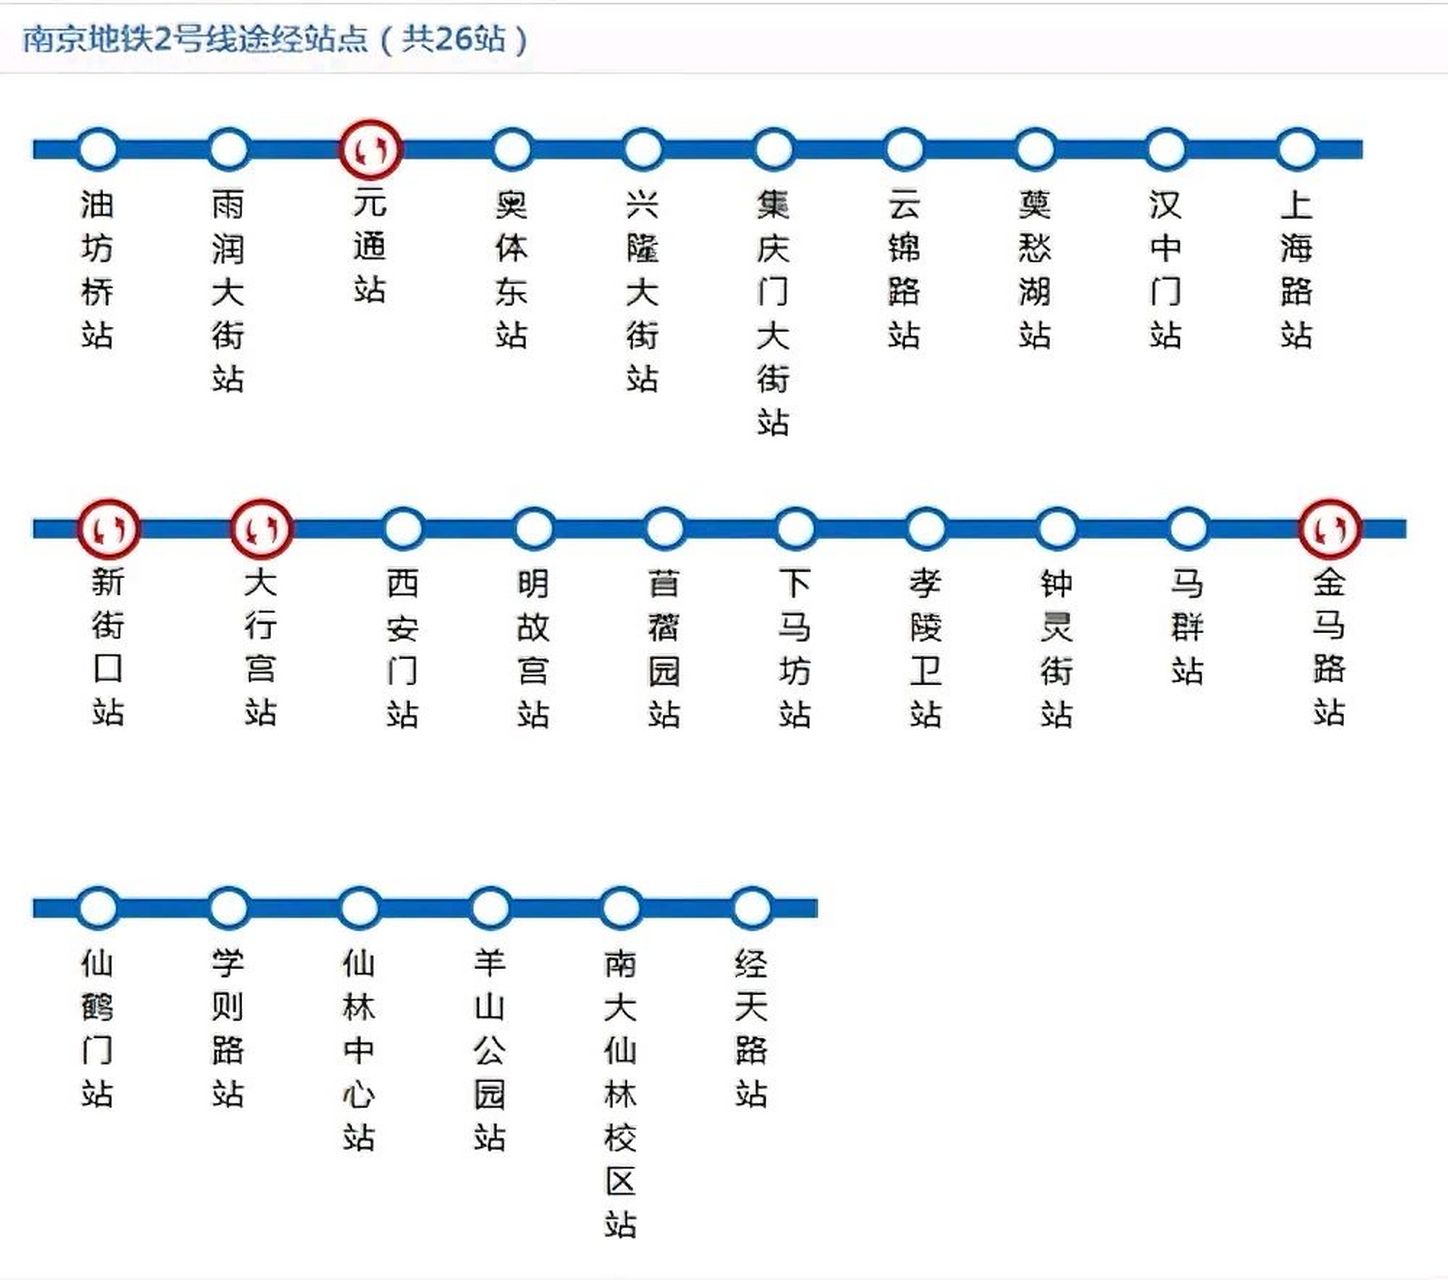 南京地铁2号线路图图片